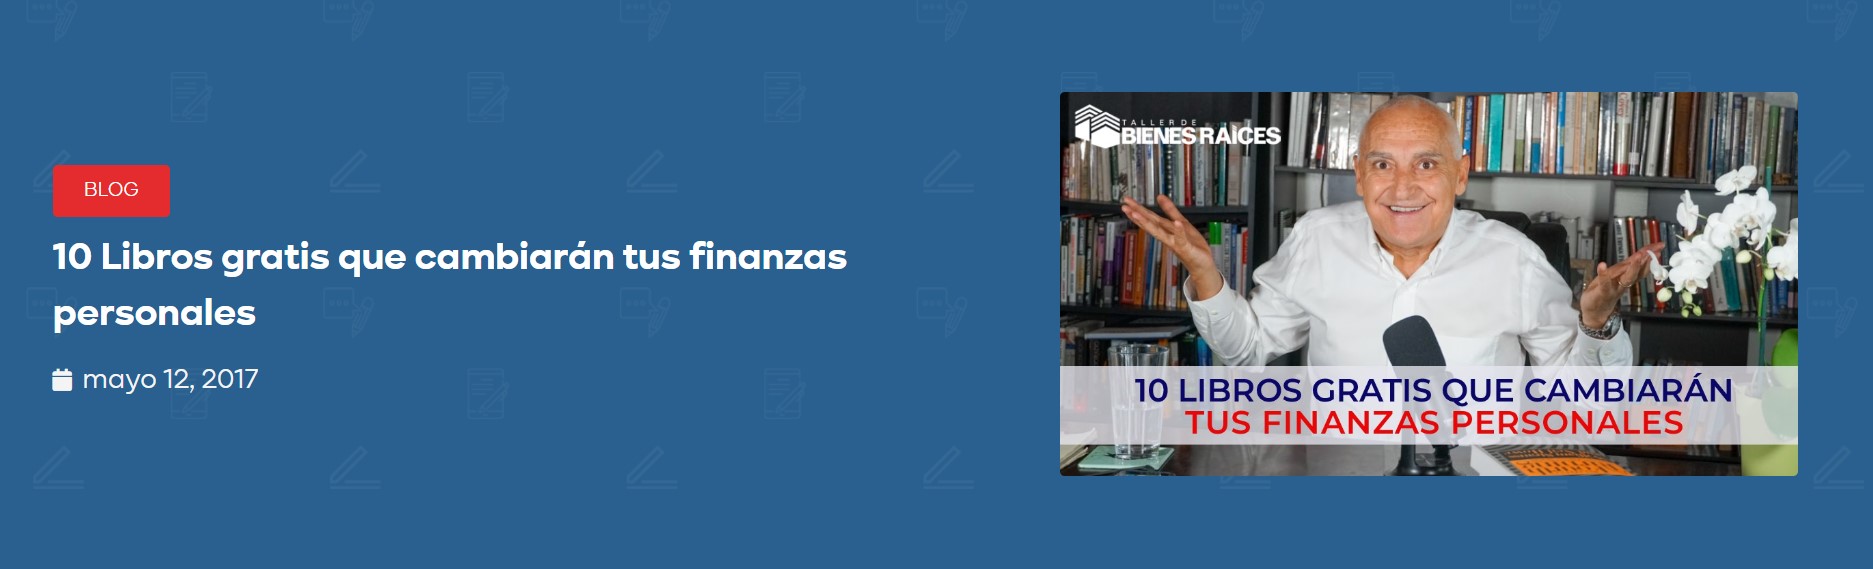 Carlos Devis recomendando 10 libros gratis sobre finanzas